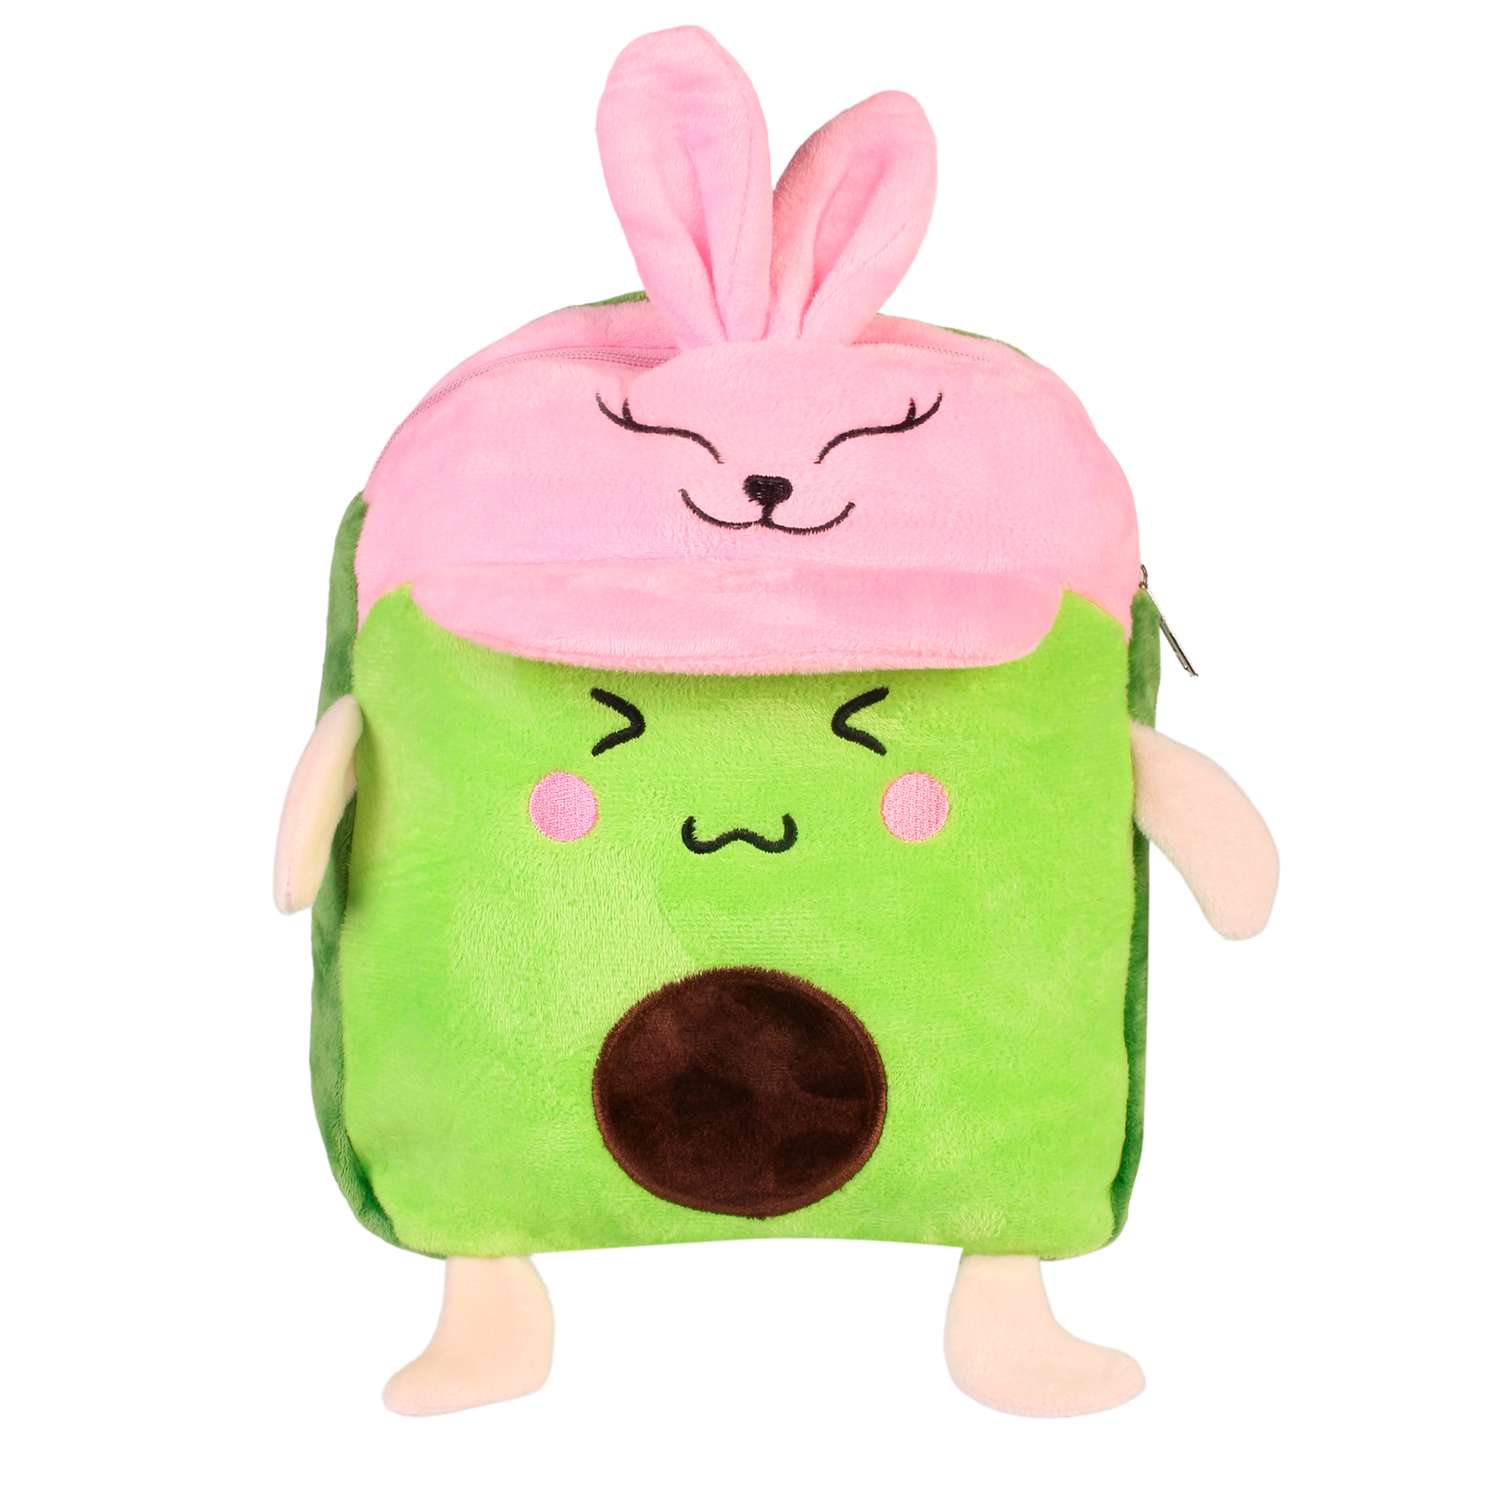 Рюкзак-игрушка Little Mania салатовый Авокадо в кепочке розовой - фото 1